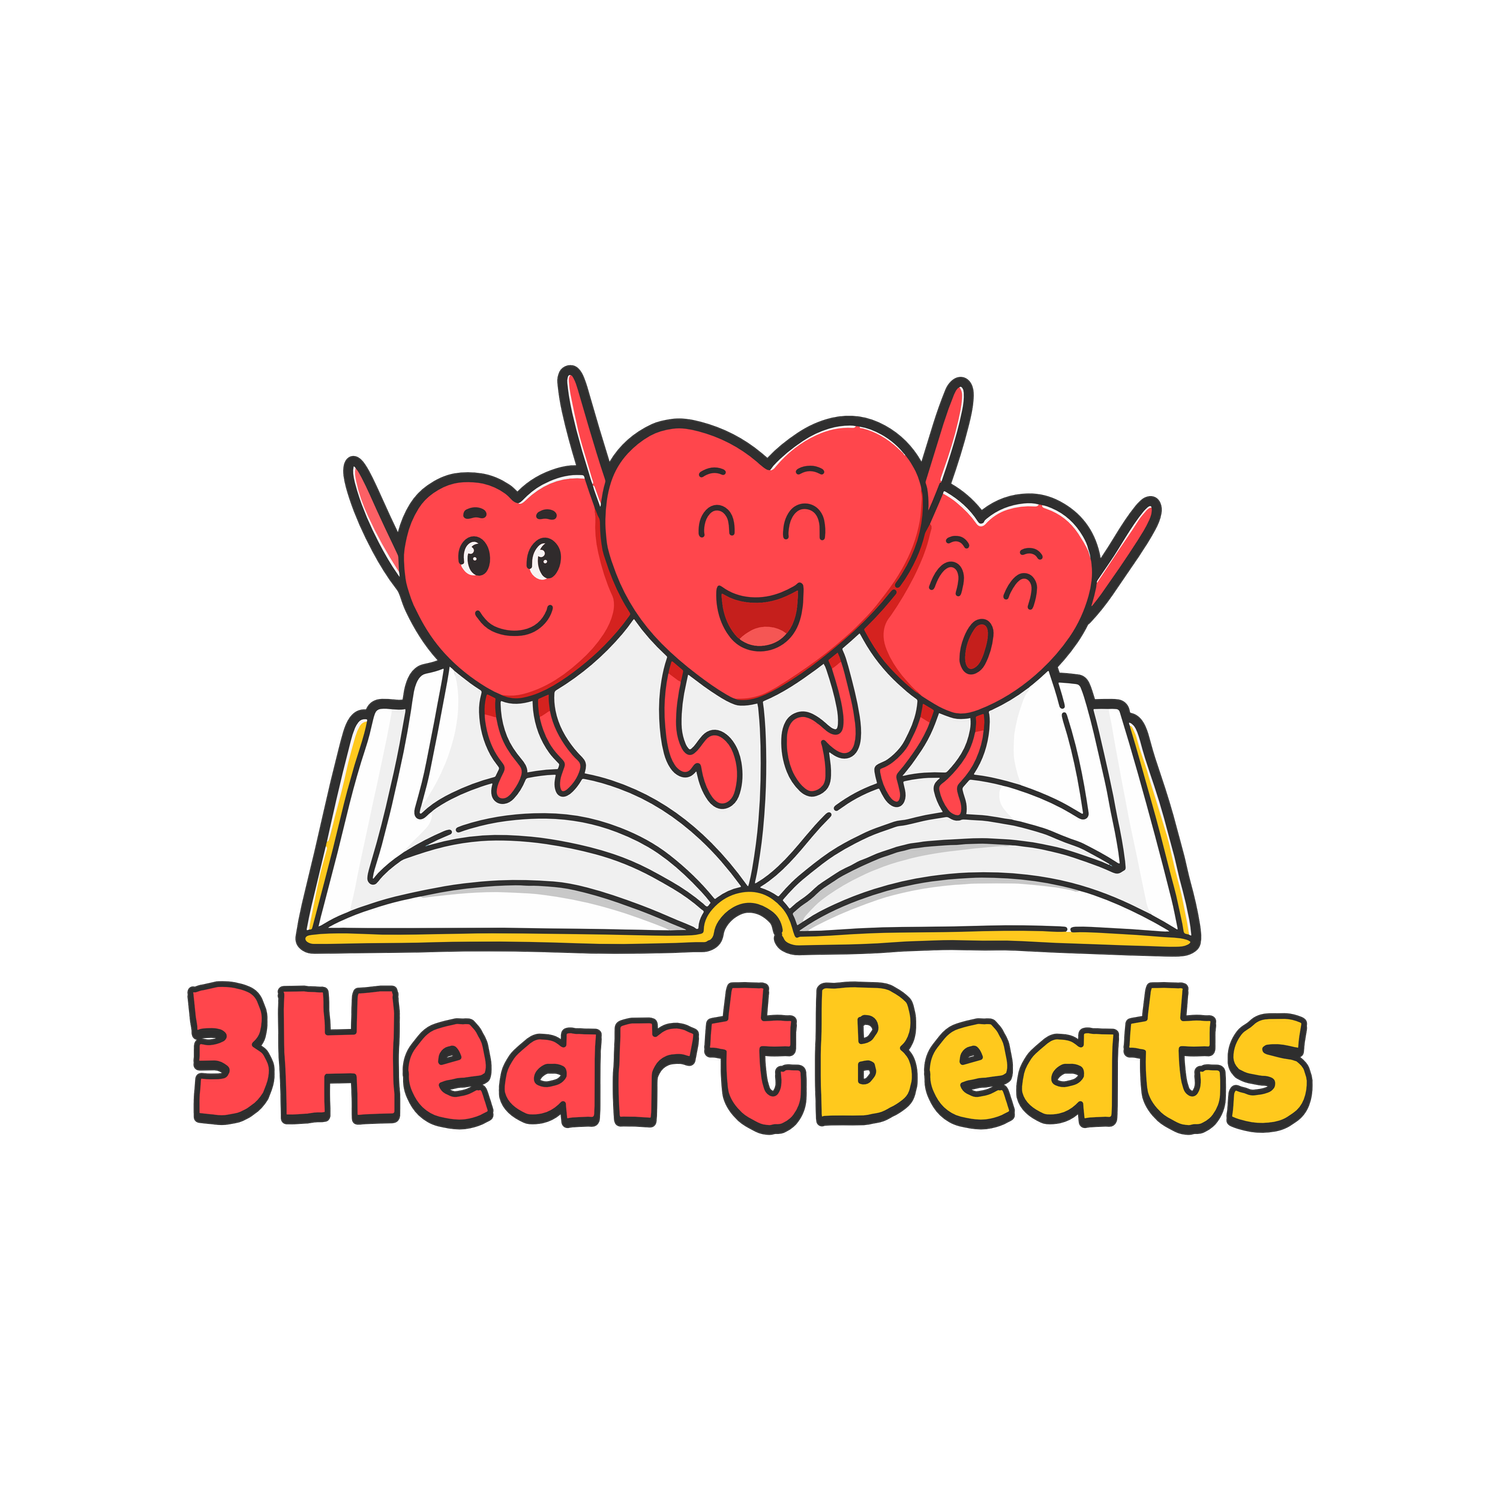 3 Heart Beats